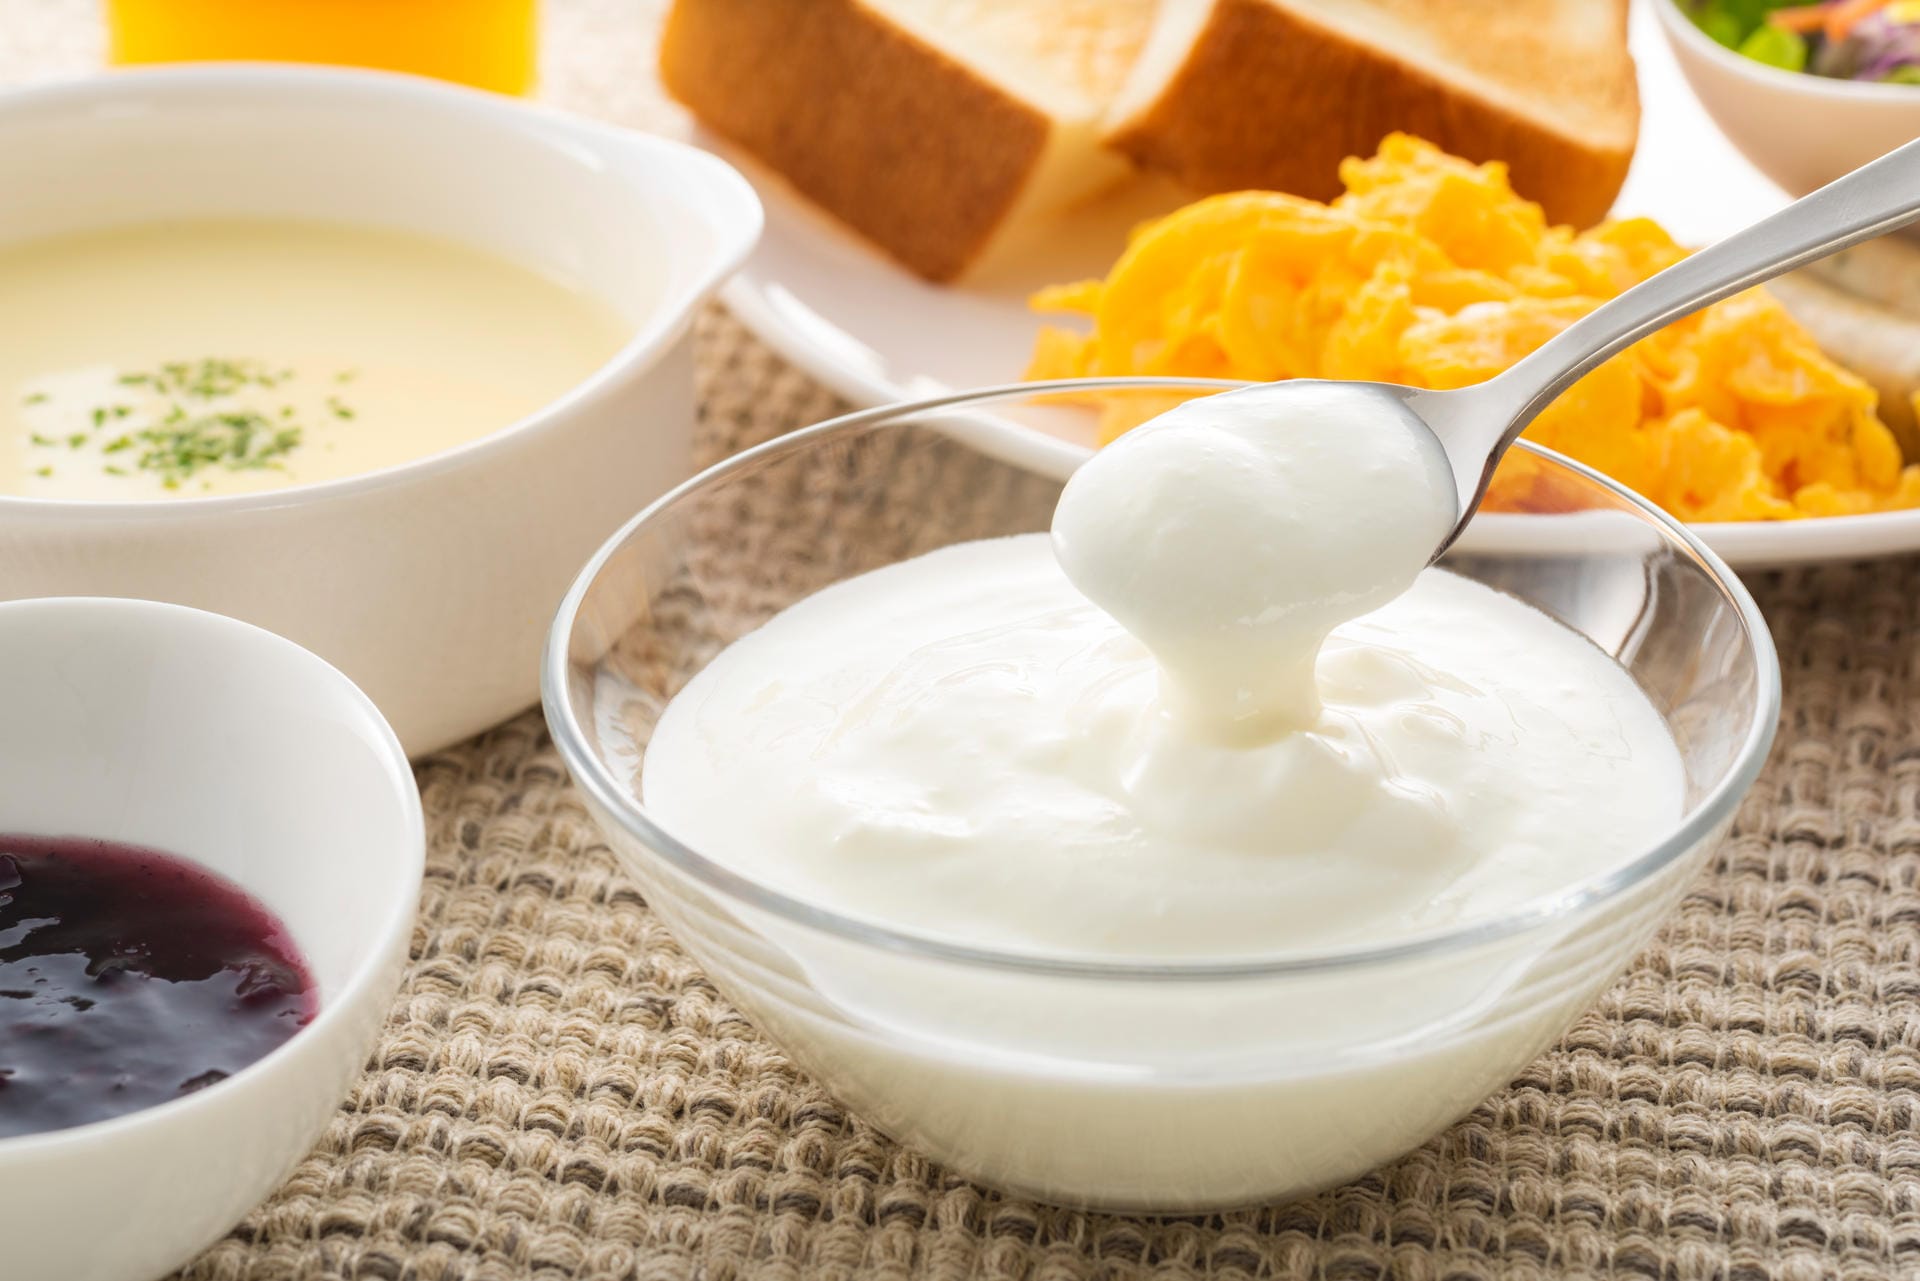 Joghurt: Die gesundheitsfördernde Wirkung des Joghurts beruht auf seinen lebenden Milchsäurebakterien. Die Kulturen sorgen für eine gesunde Darmflora. Zudem ist Joghurt – wie fast alle Milchprodukte – reich an dem Knochenmineral Kalzium. Alternative Milchprodukte sind vor allem Kefir, Dickmilch und Buttermilch, da auch diese lebende Kulturen enthalten.